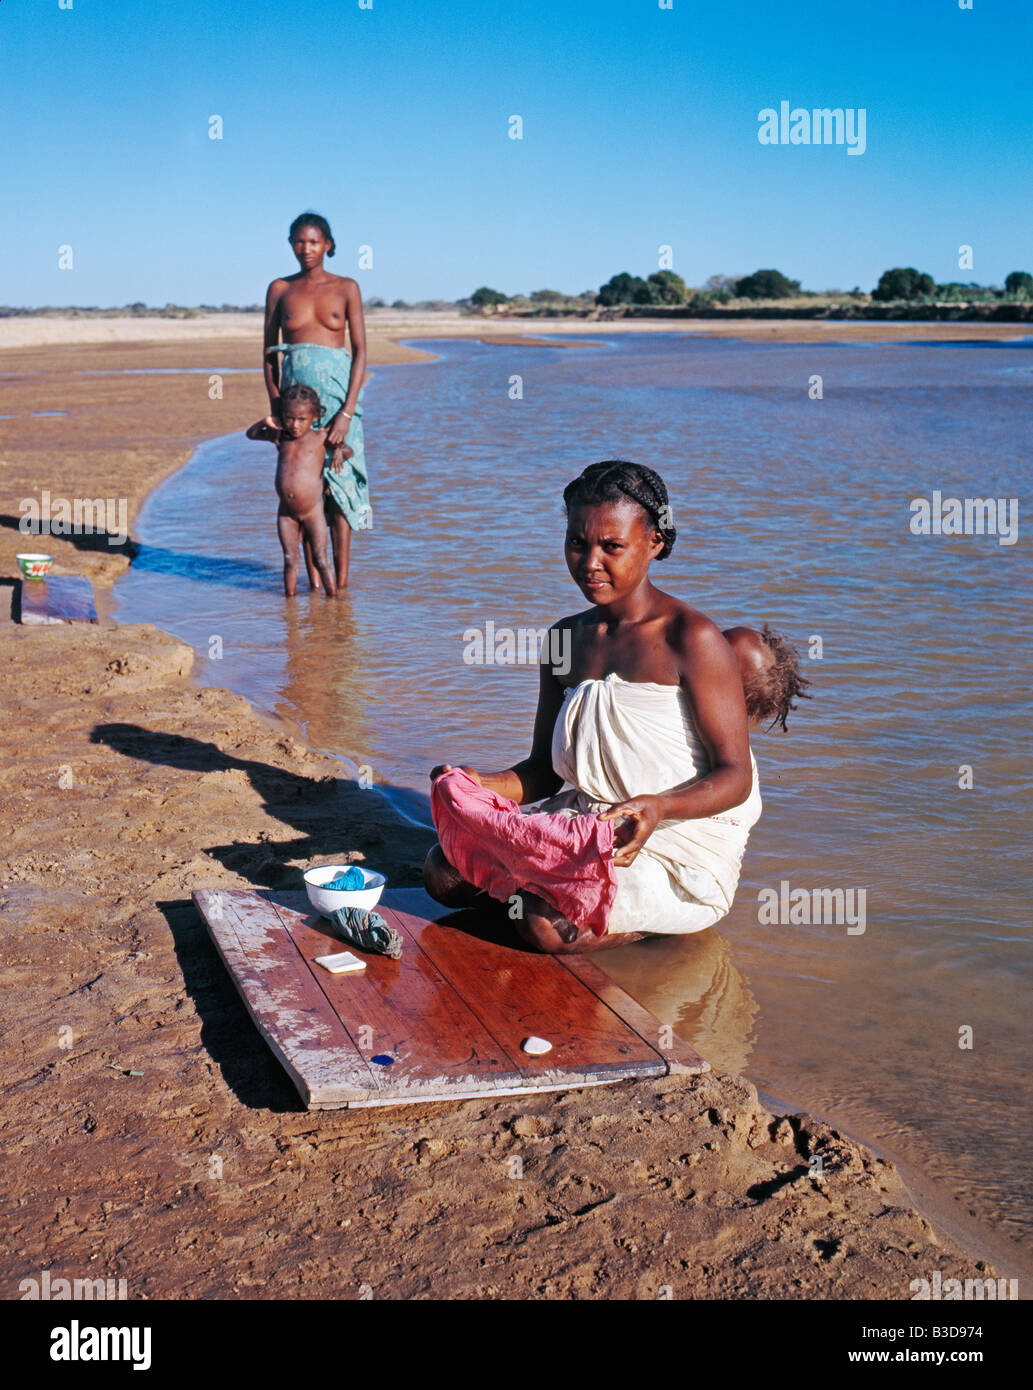 Femmes lavant dans la ri viere femme faire la lessive dans la rivière Madagascar Madagascar Afrique Femme sale propreté faisant i Banque D'Images